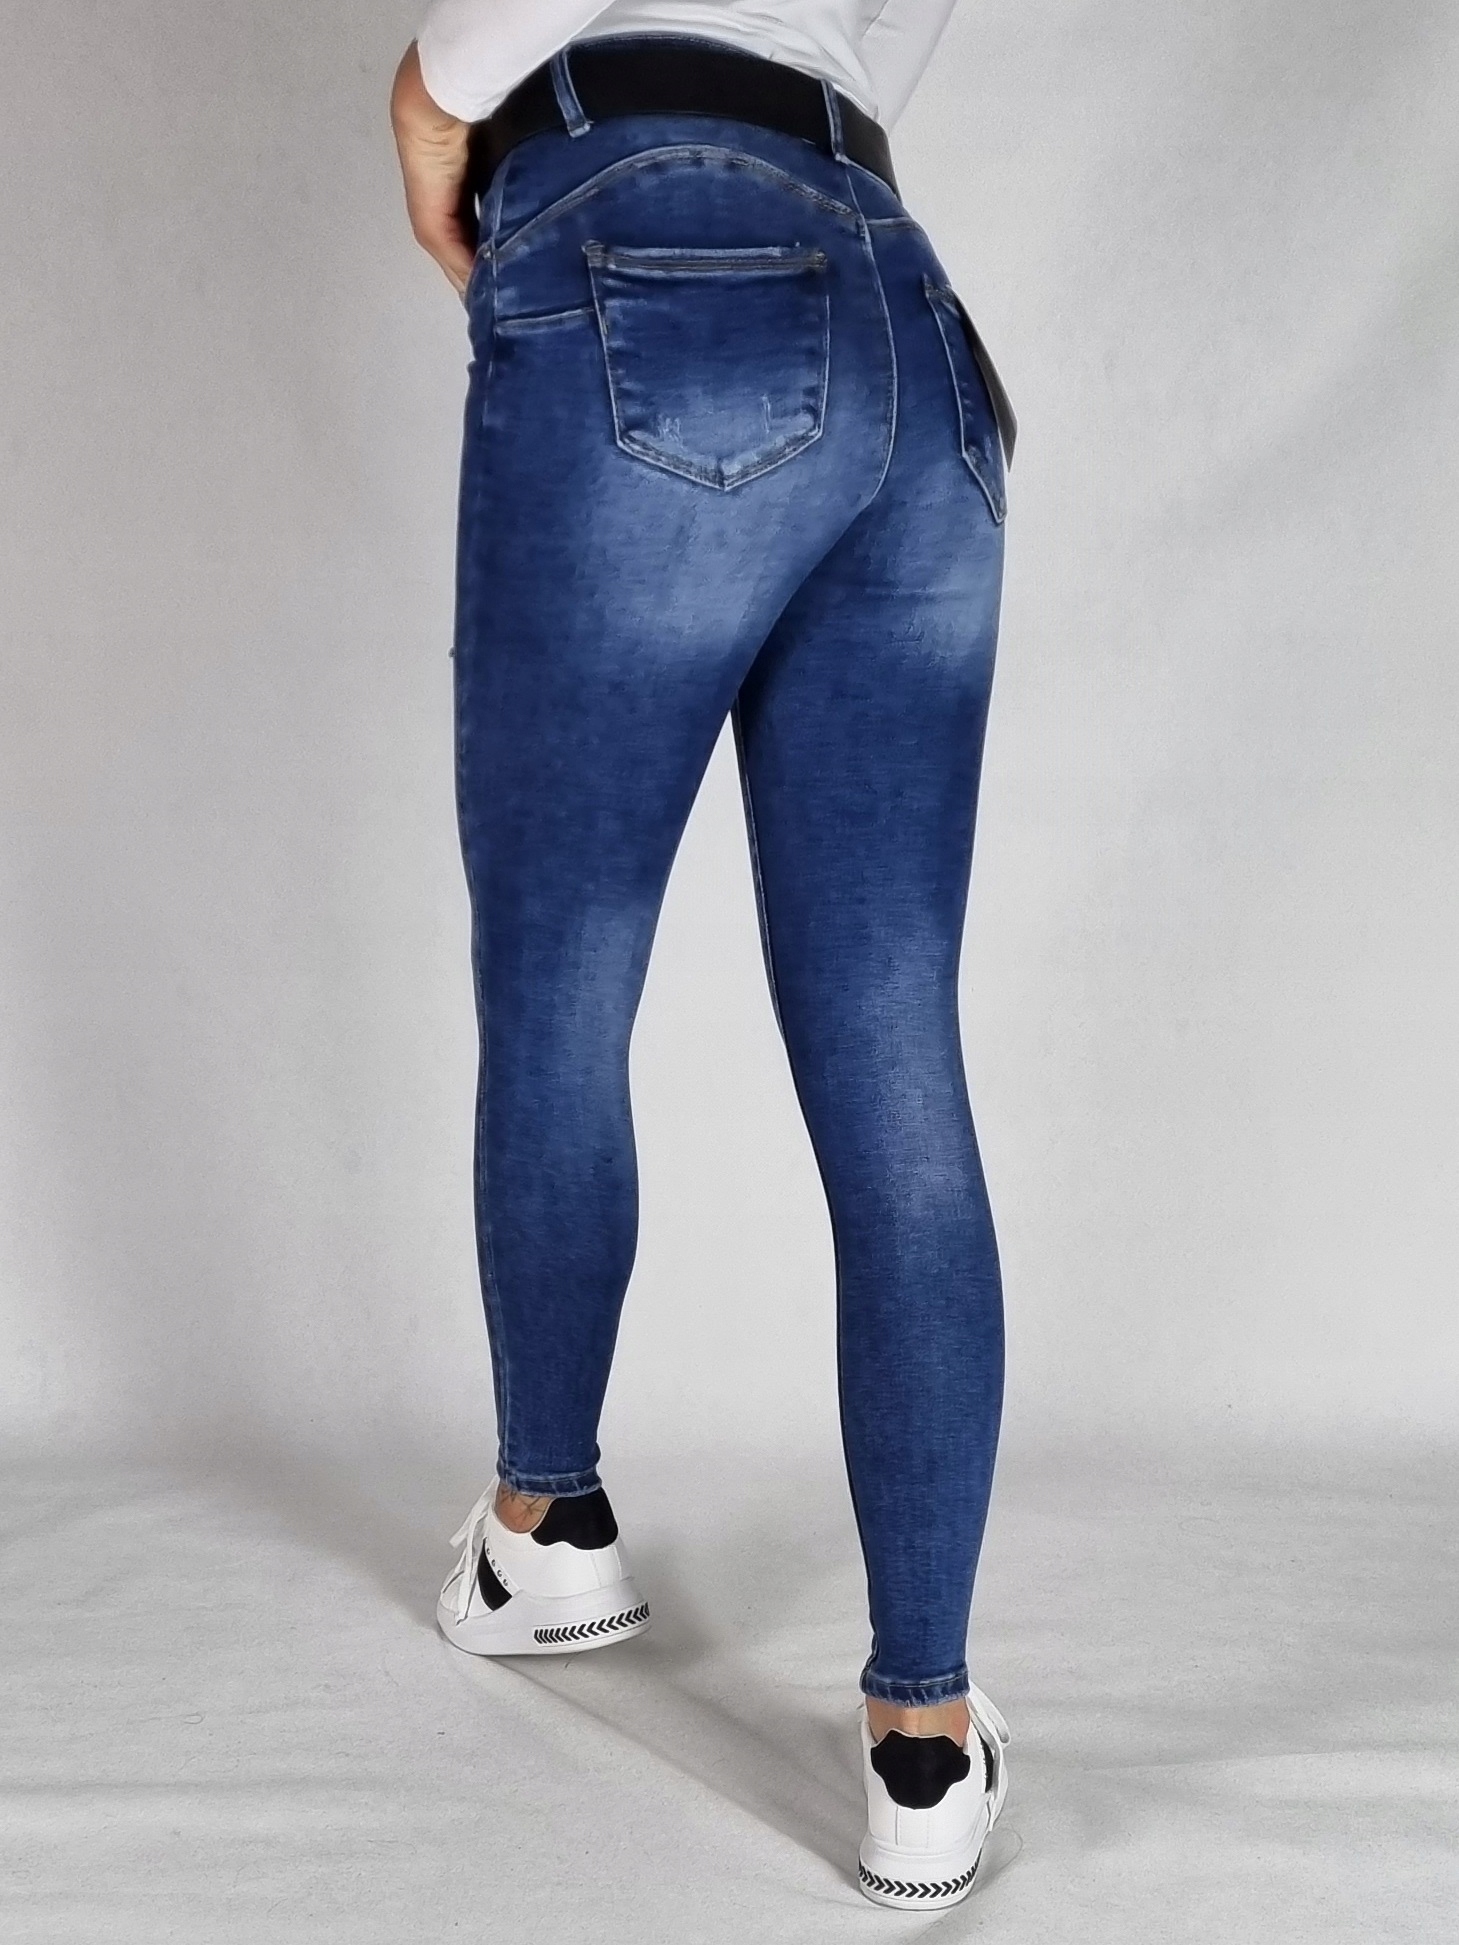 M. SARA джинсовые брюки с отверстиями размер 28 размер 28